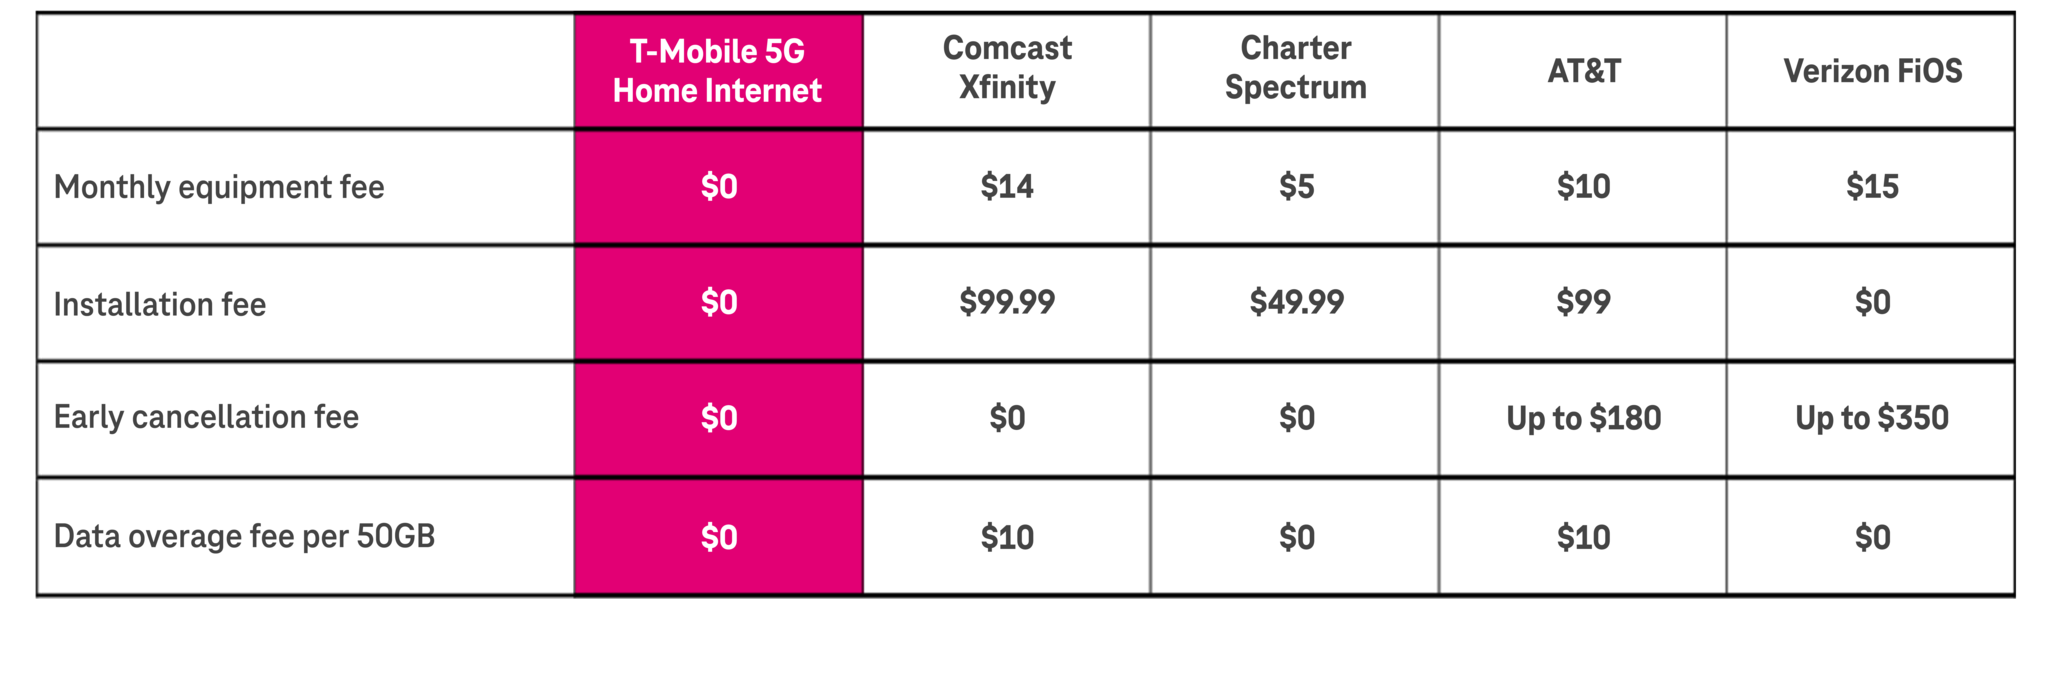 T Mobile Home Internet Fee Comparison